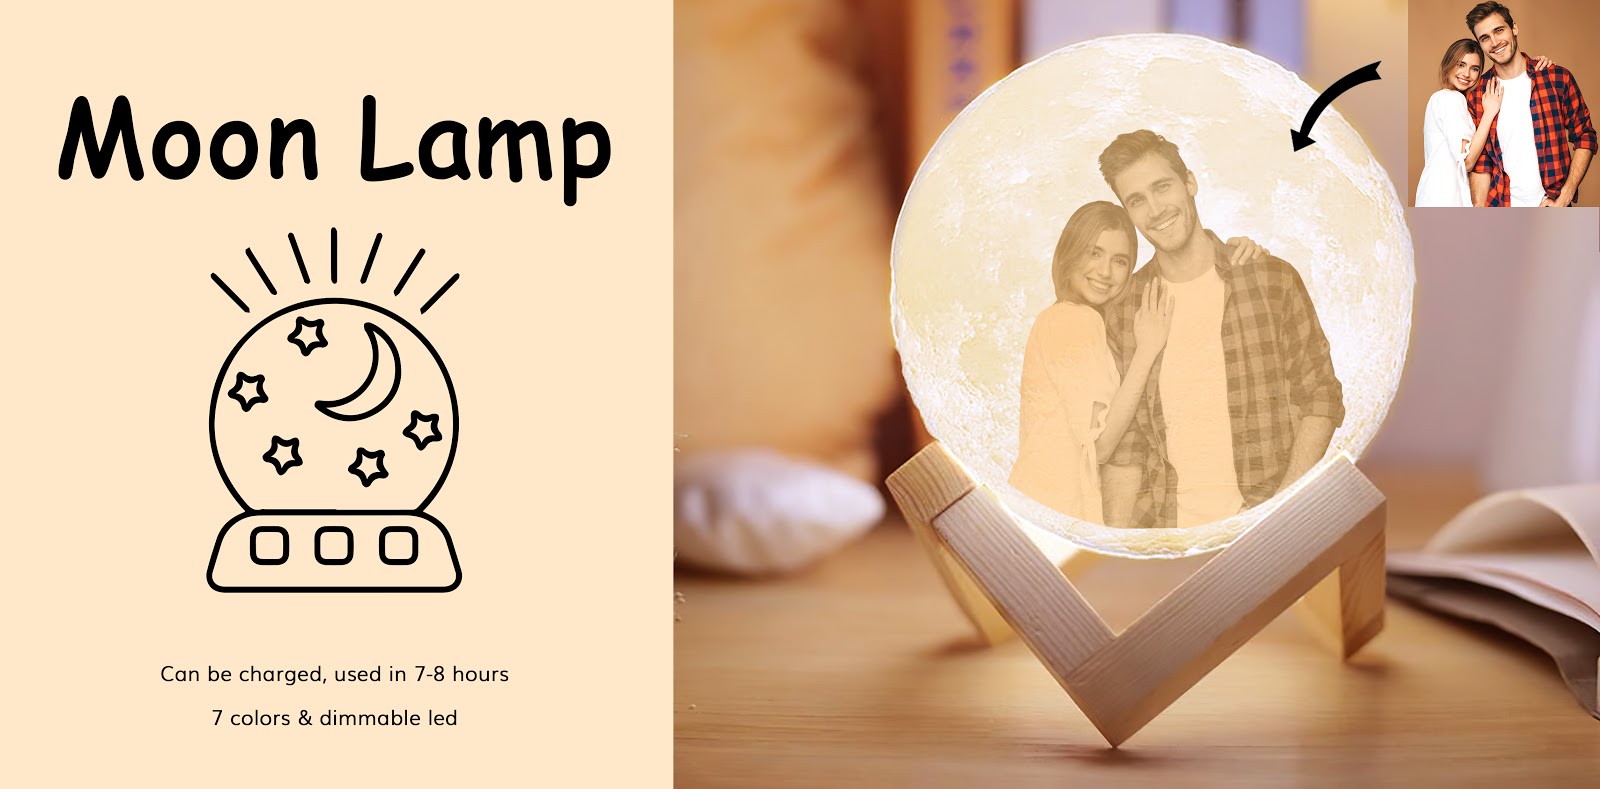 Sản phẩm đèn trang trí Moon lamp độc quyền của PrintBase phân phối với những thông điệp ý nghĩa hoặc hình ảnh có thể in lên sản phẩm